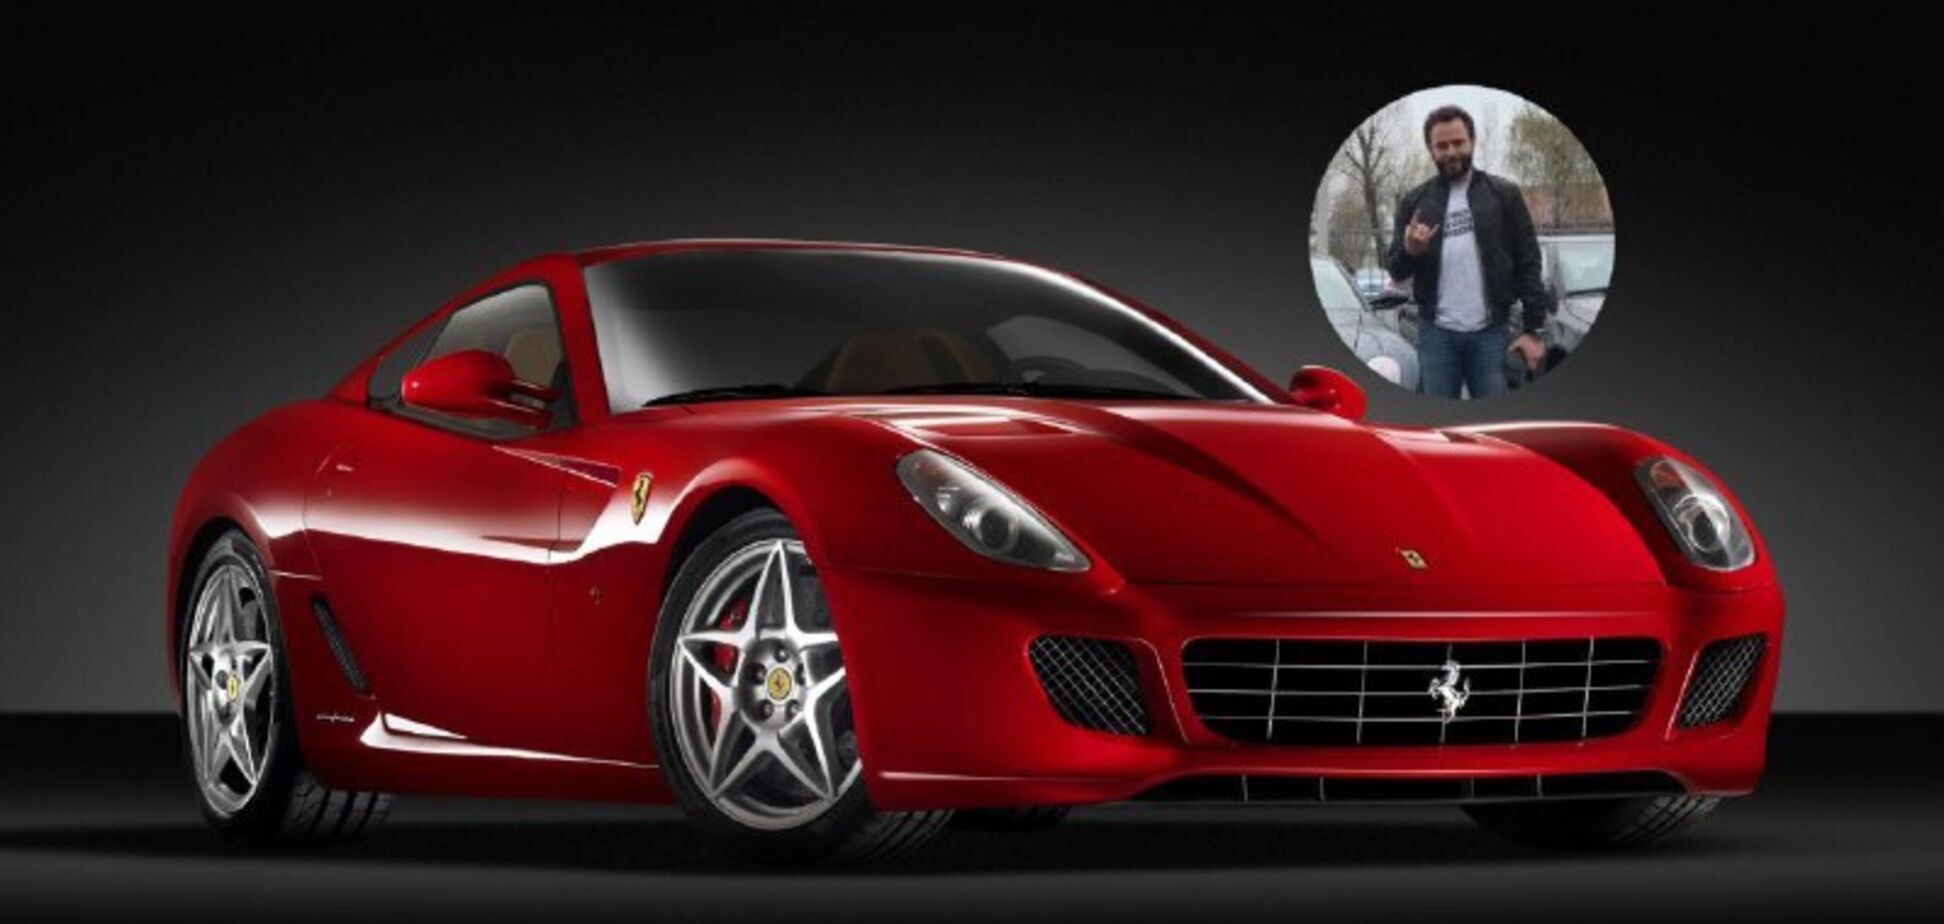 Скандальный сын Гладковского купил элитный Ferrari. Фото